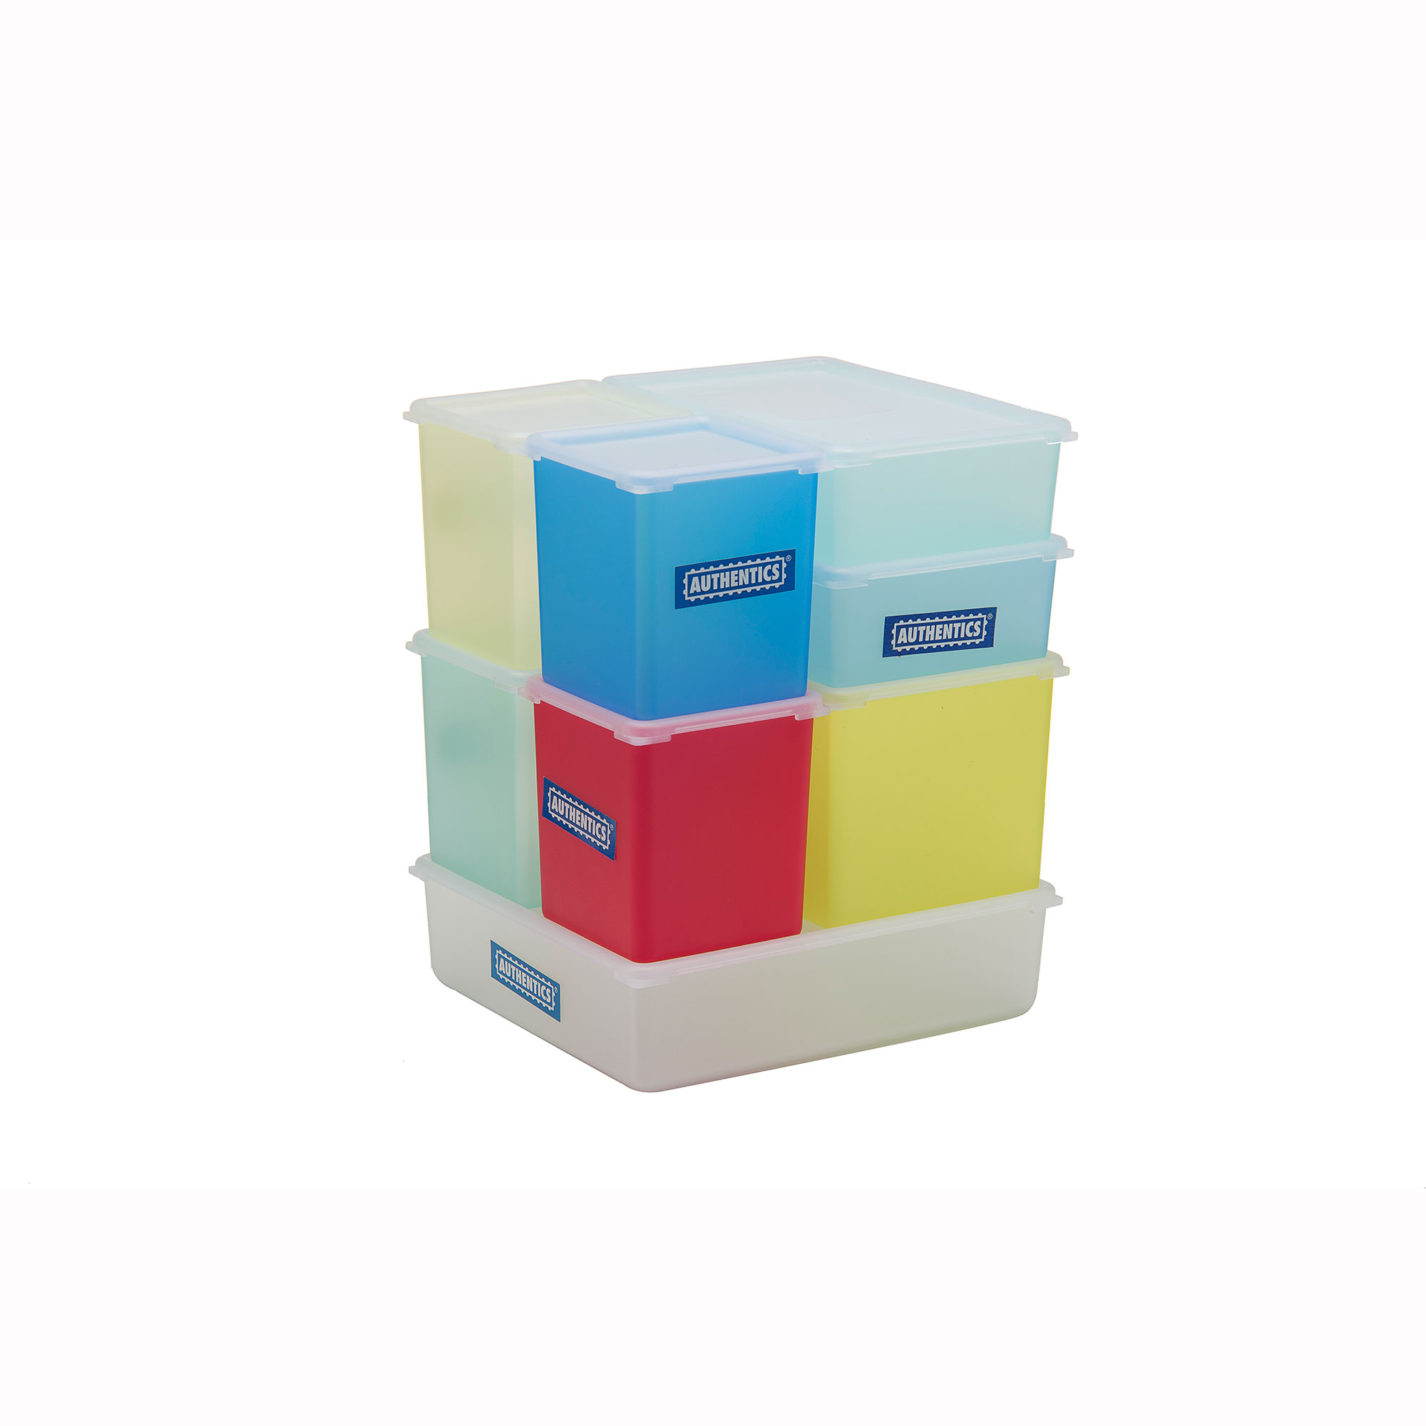 Ensemble de récipients alimentaires rectangulaires de différentes tailles en teintes translucides bleues, jaunes, vertes et rouges, toutes munies de couvercles transparents blancs. Les pièces s’imbriquent de façon à former un cube.